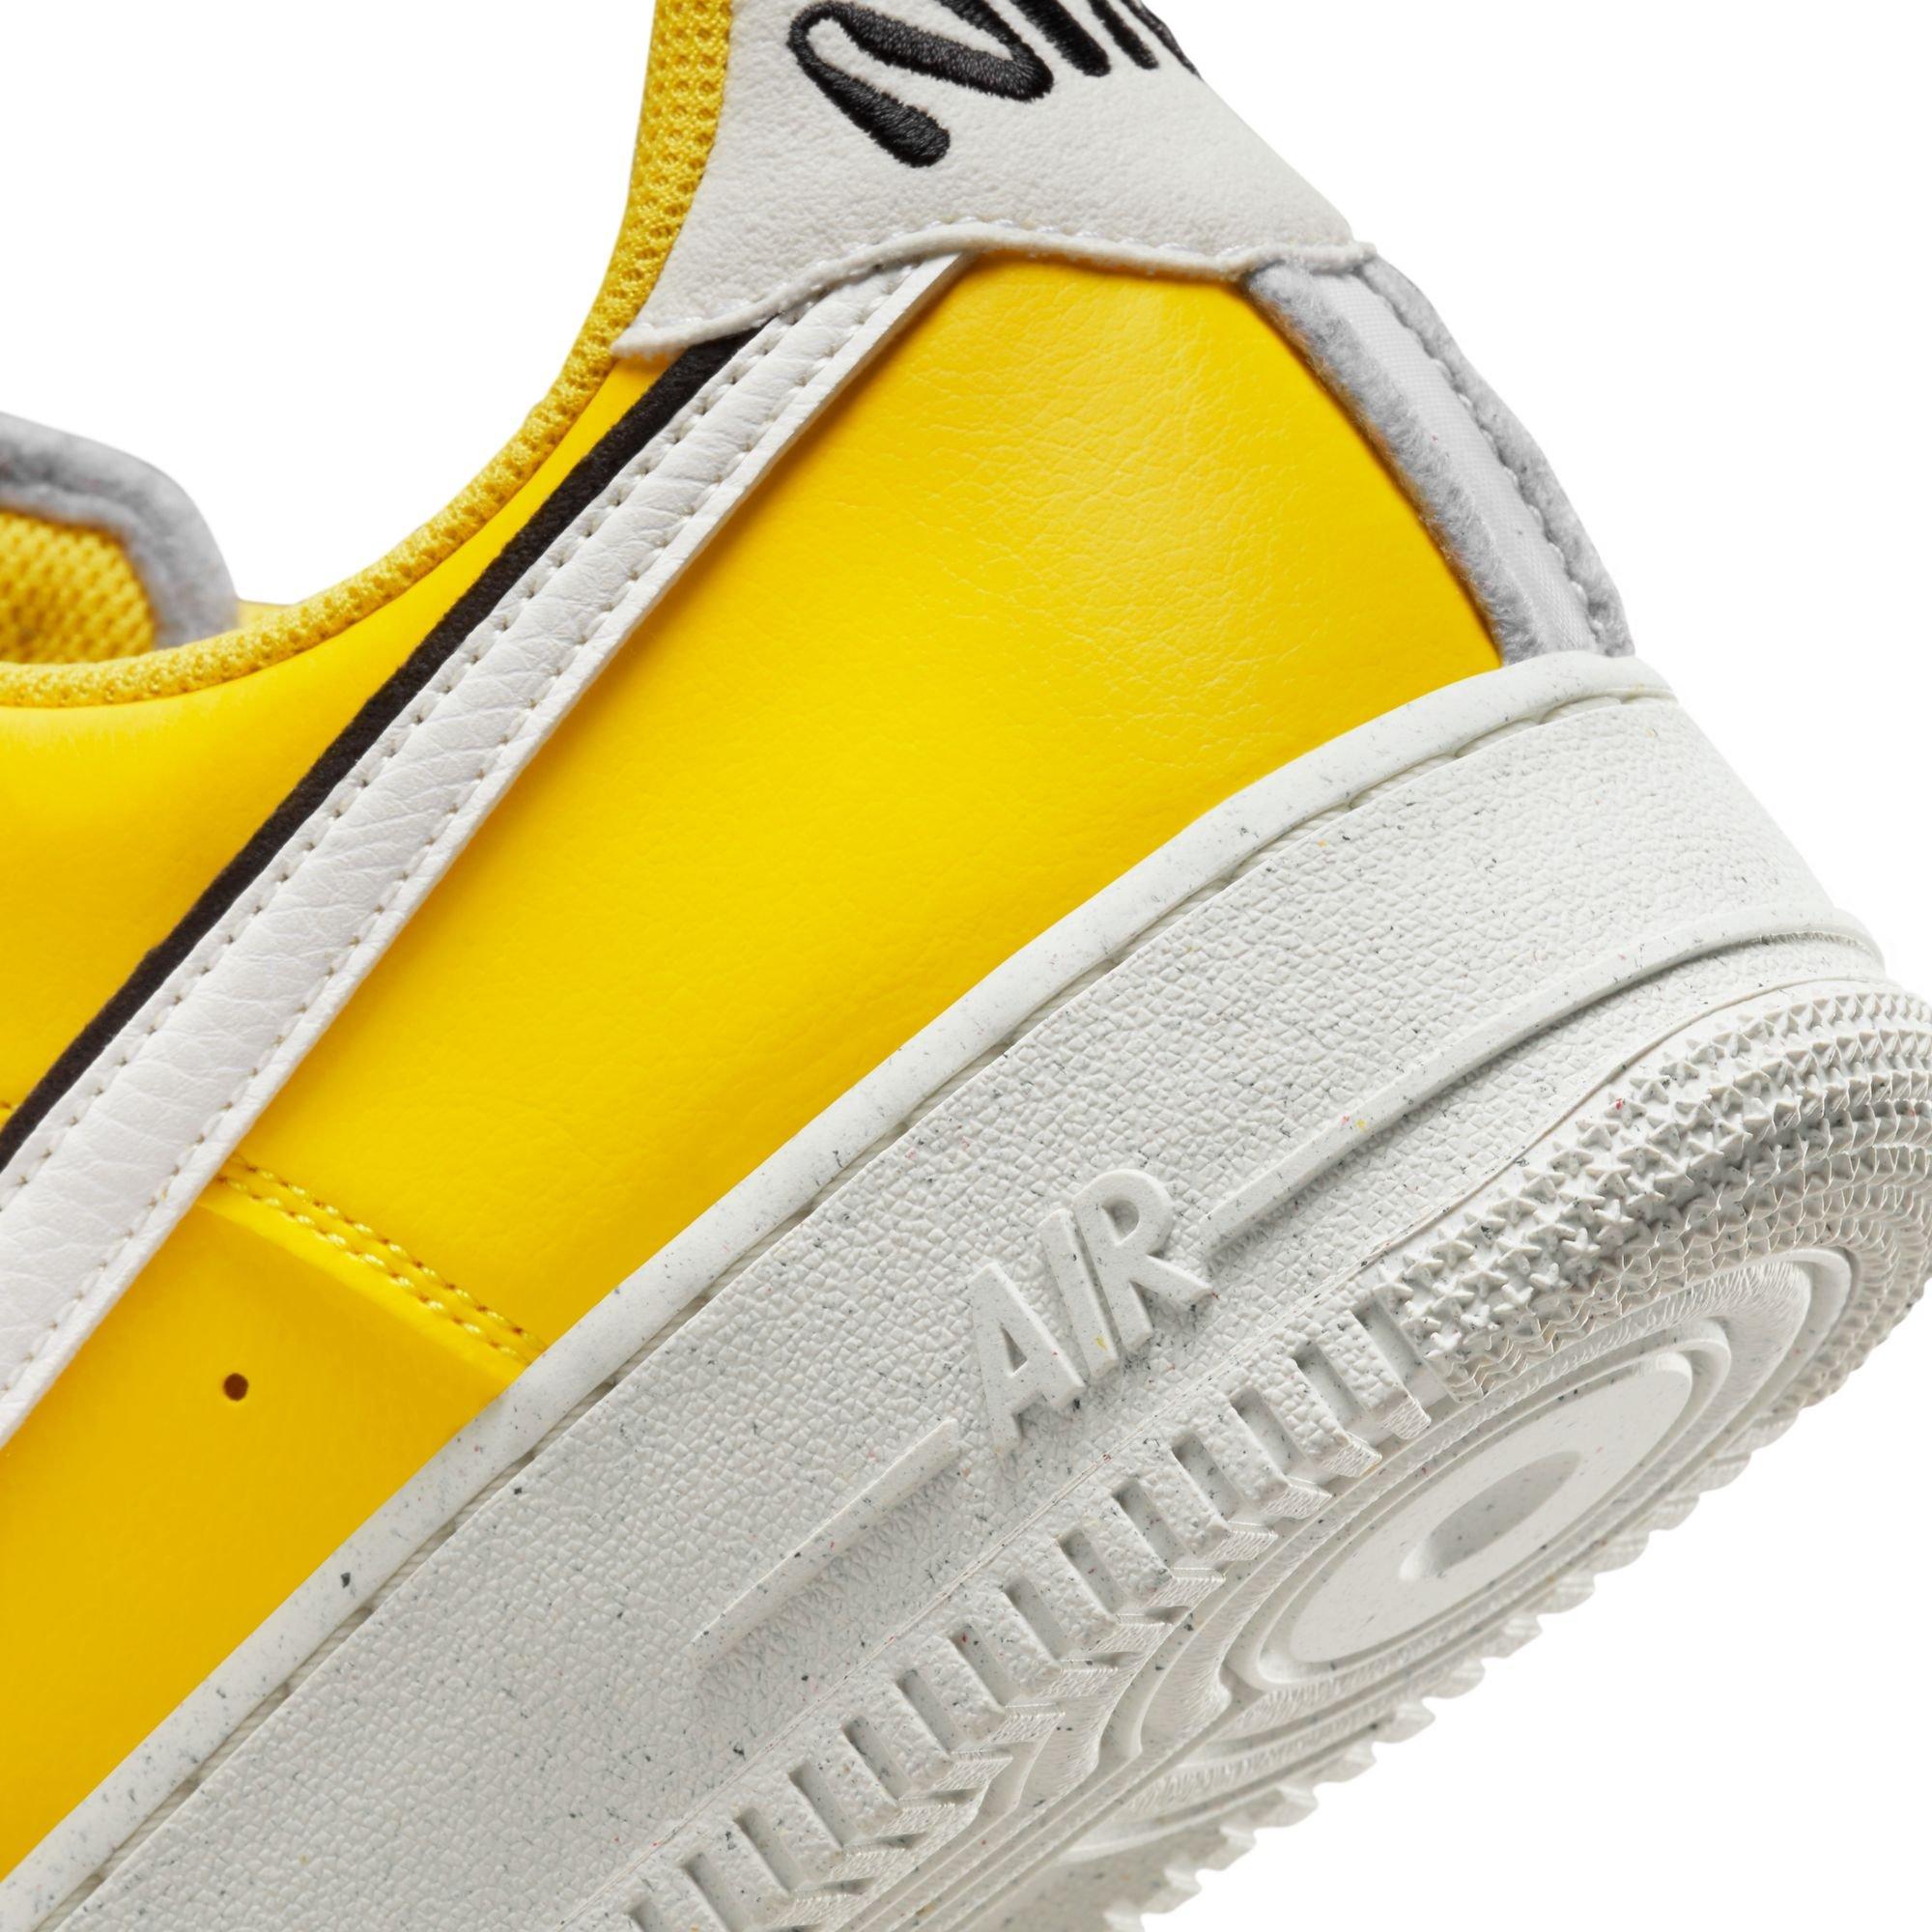 Nike Air Force '07 LV8 "Tour Yellow/Sail/Black" Men's Shoe